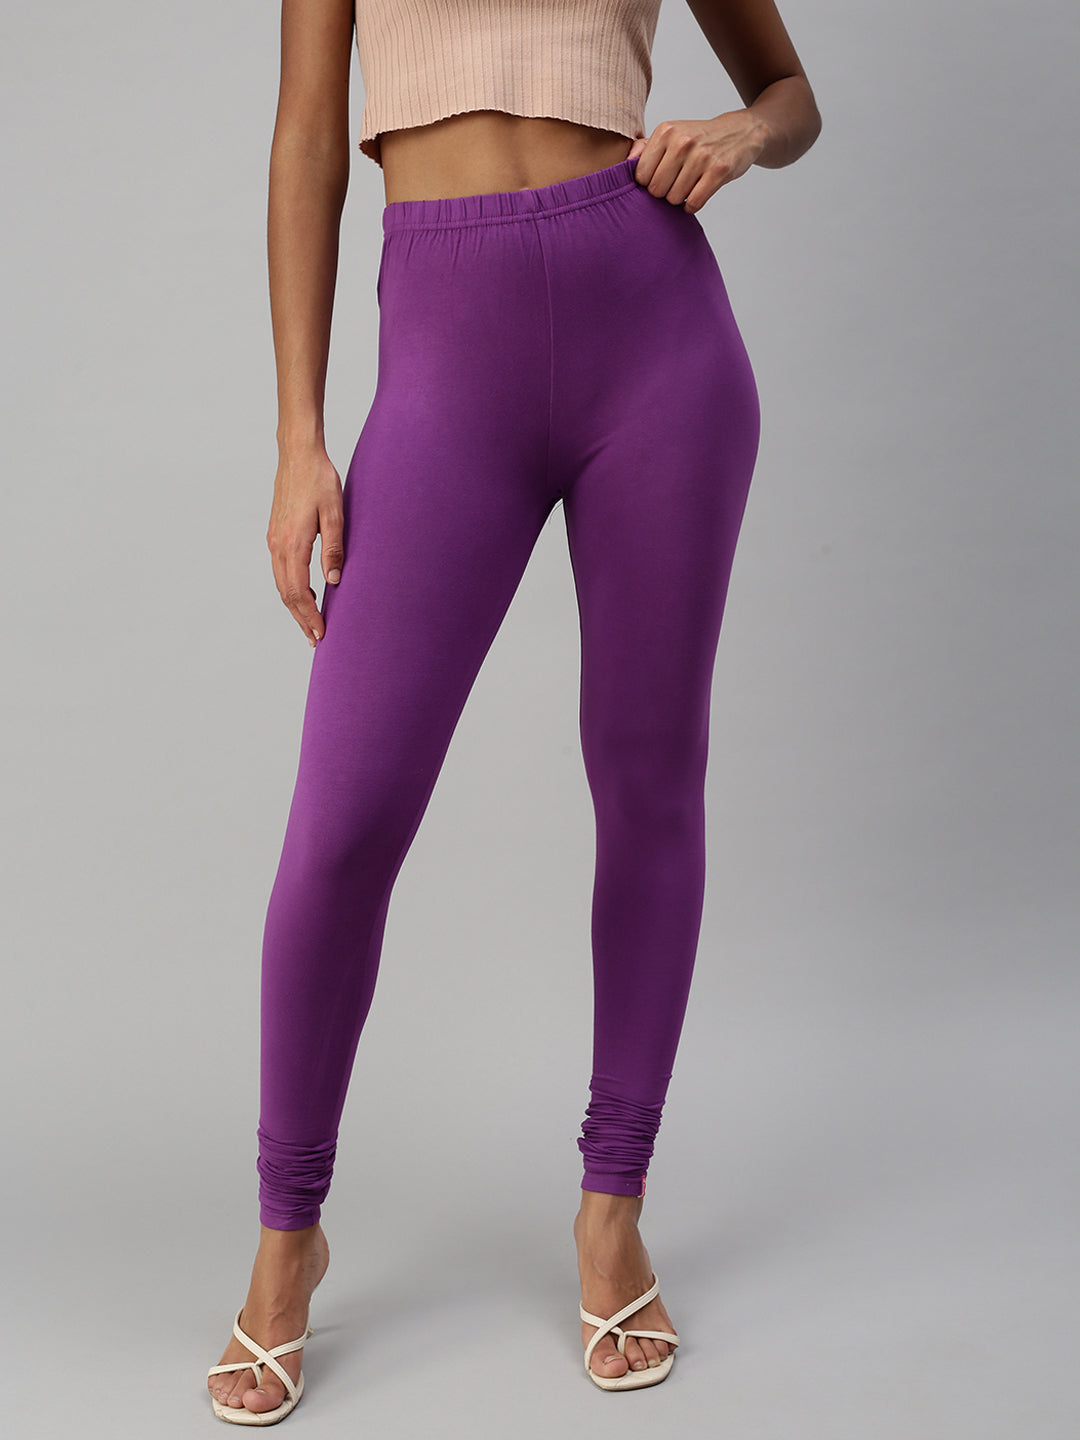 Falcon Regular Waist Leggings - Light Purple Melange - Clothing | Prozis